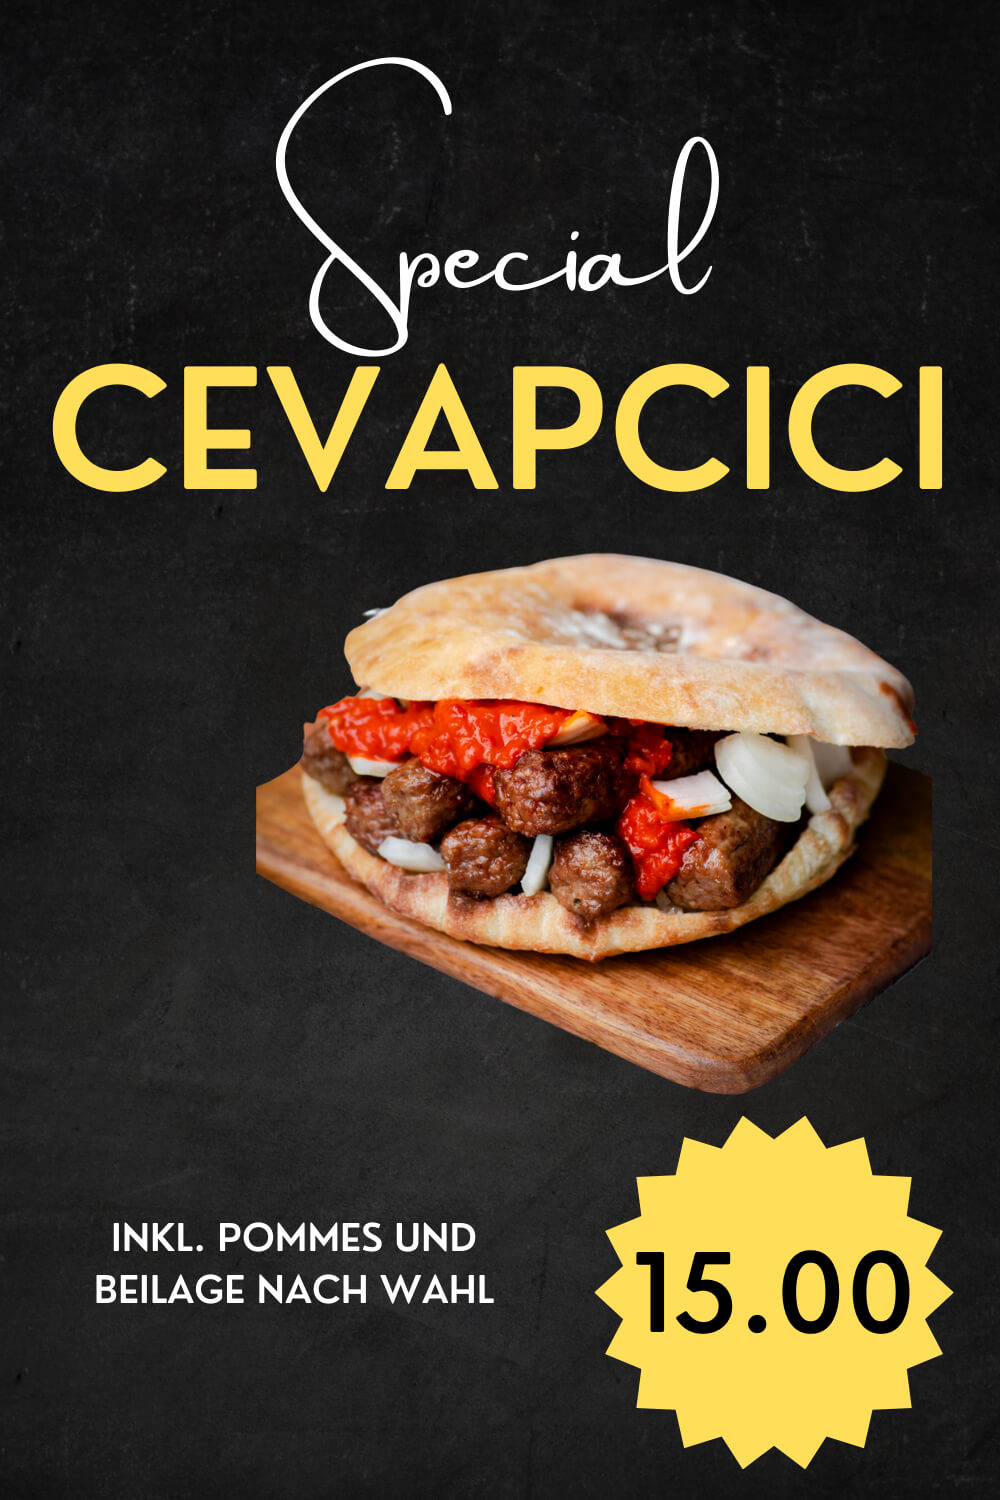 Taste og Balkan Cevapcici